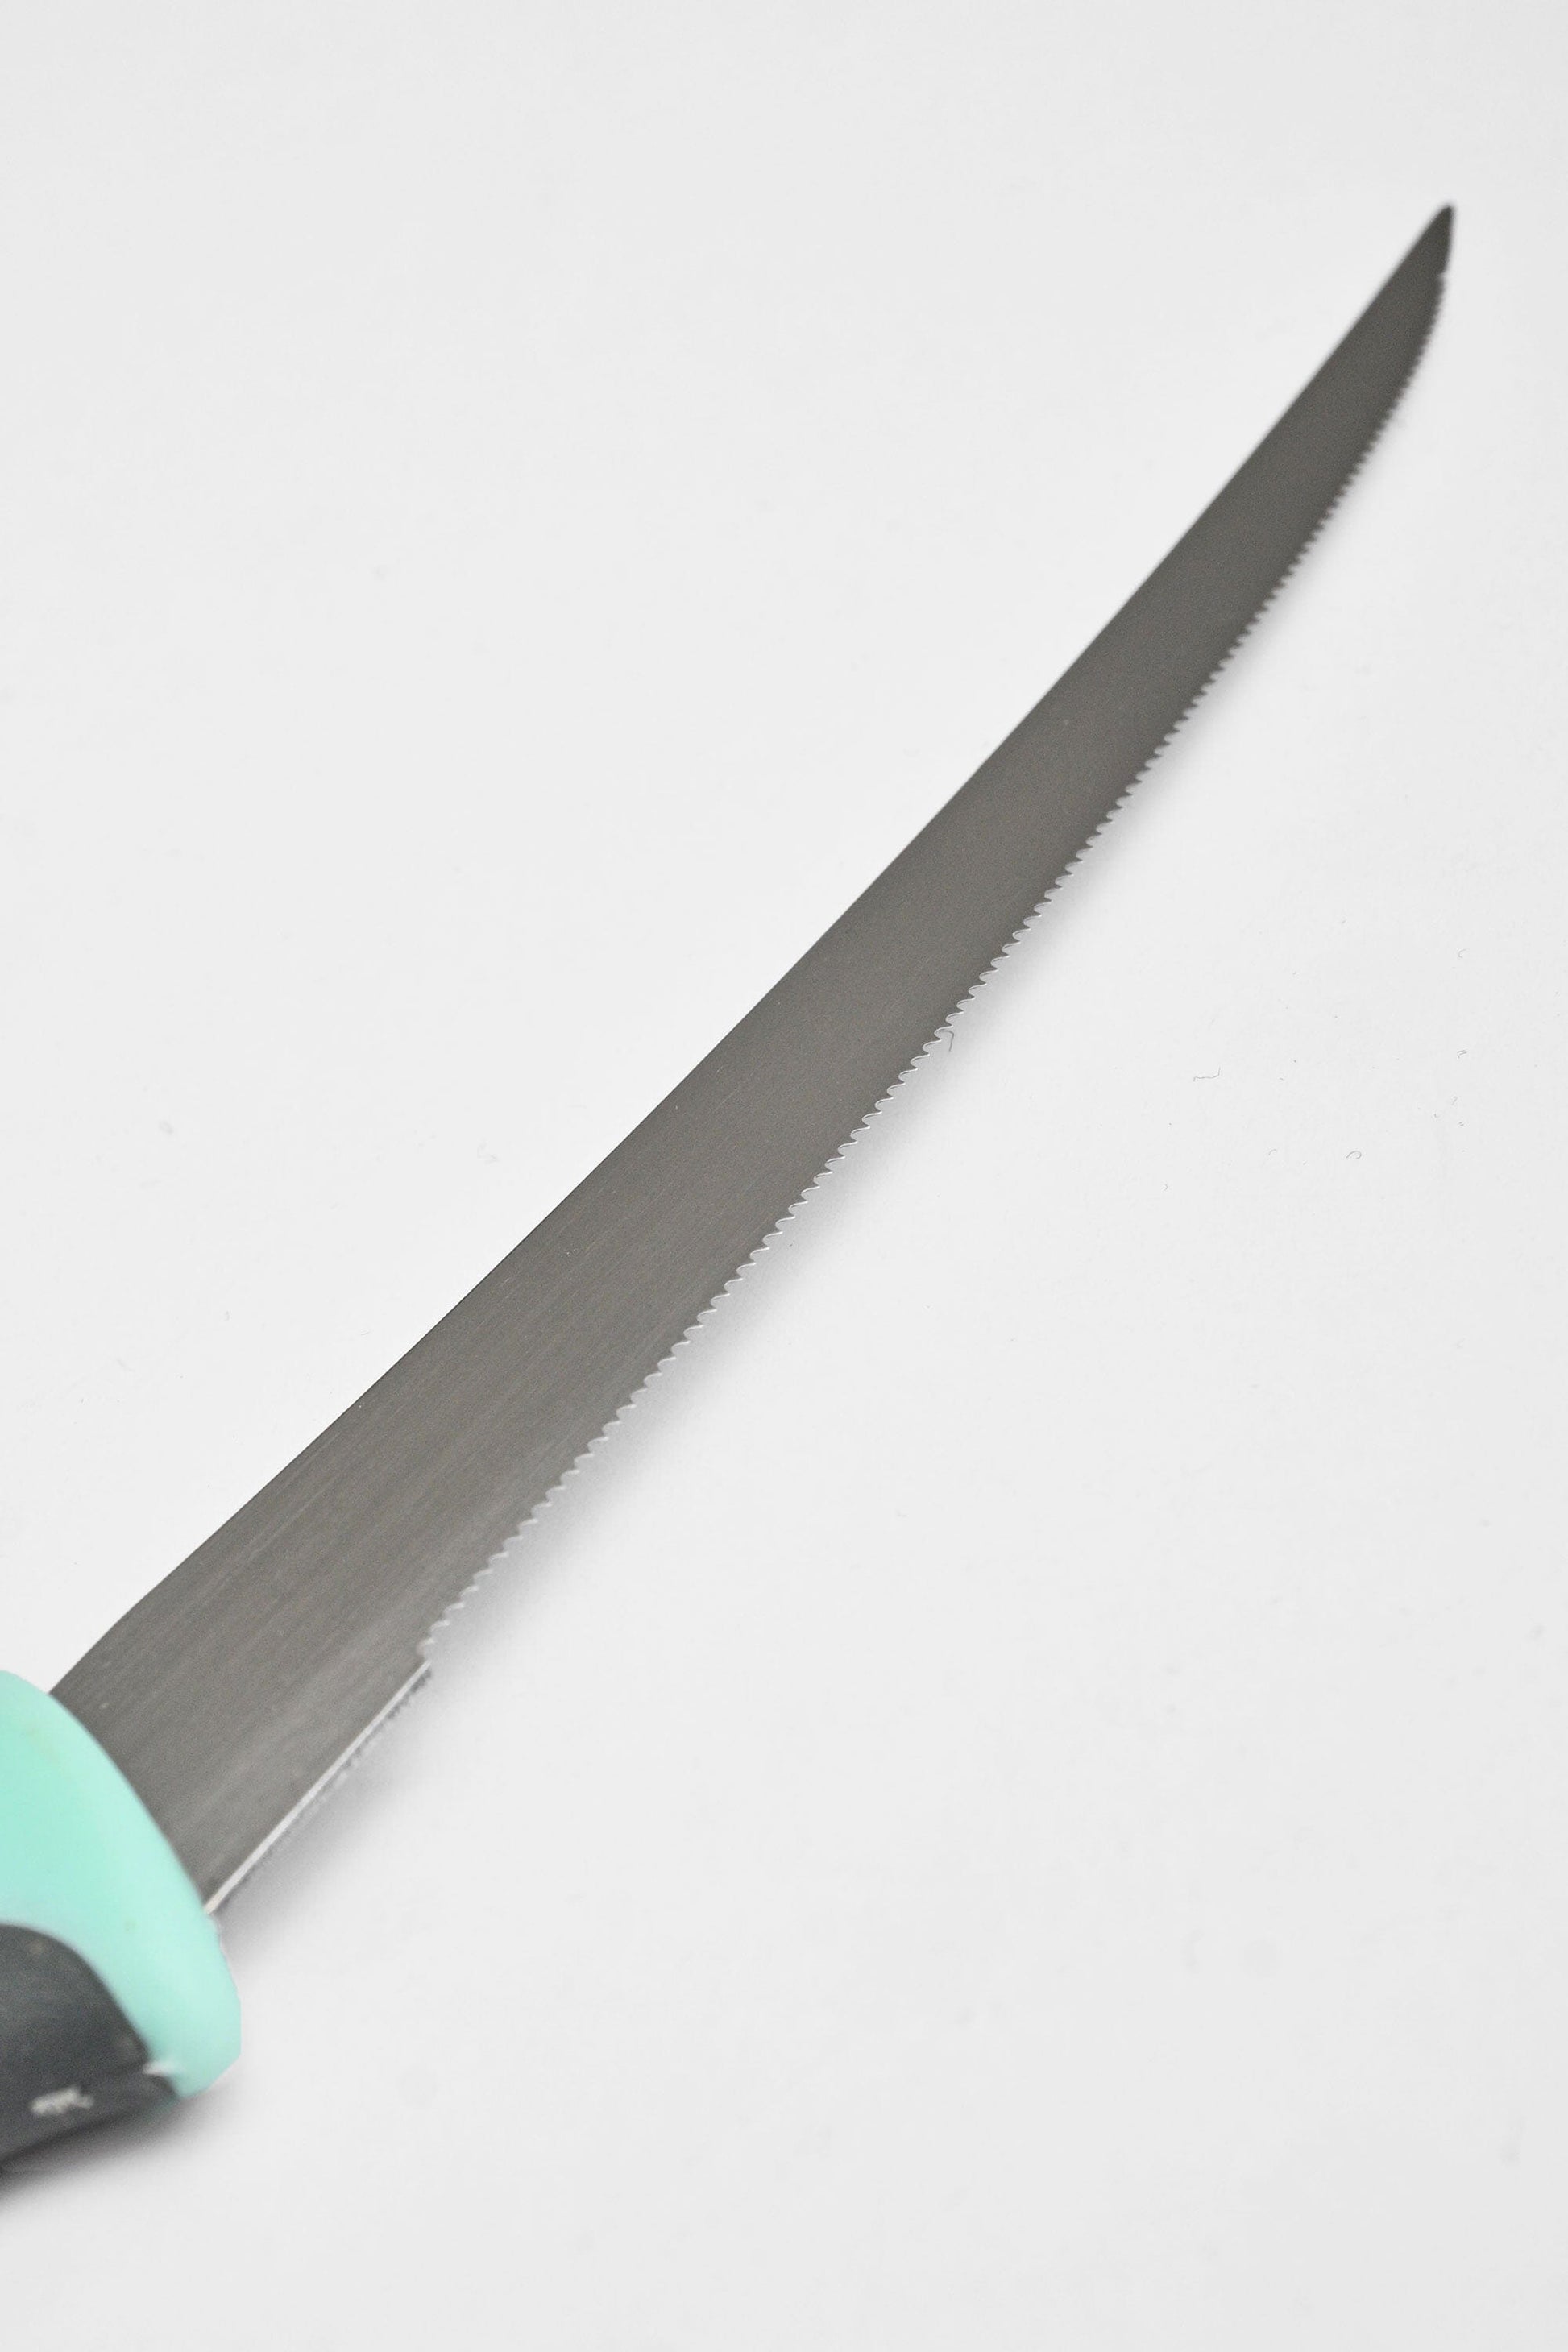 Kokkola Stainless Steel Kitchen Knife Kitchen Accessories RAM 